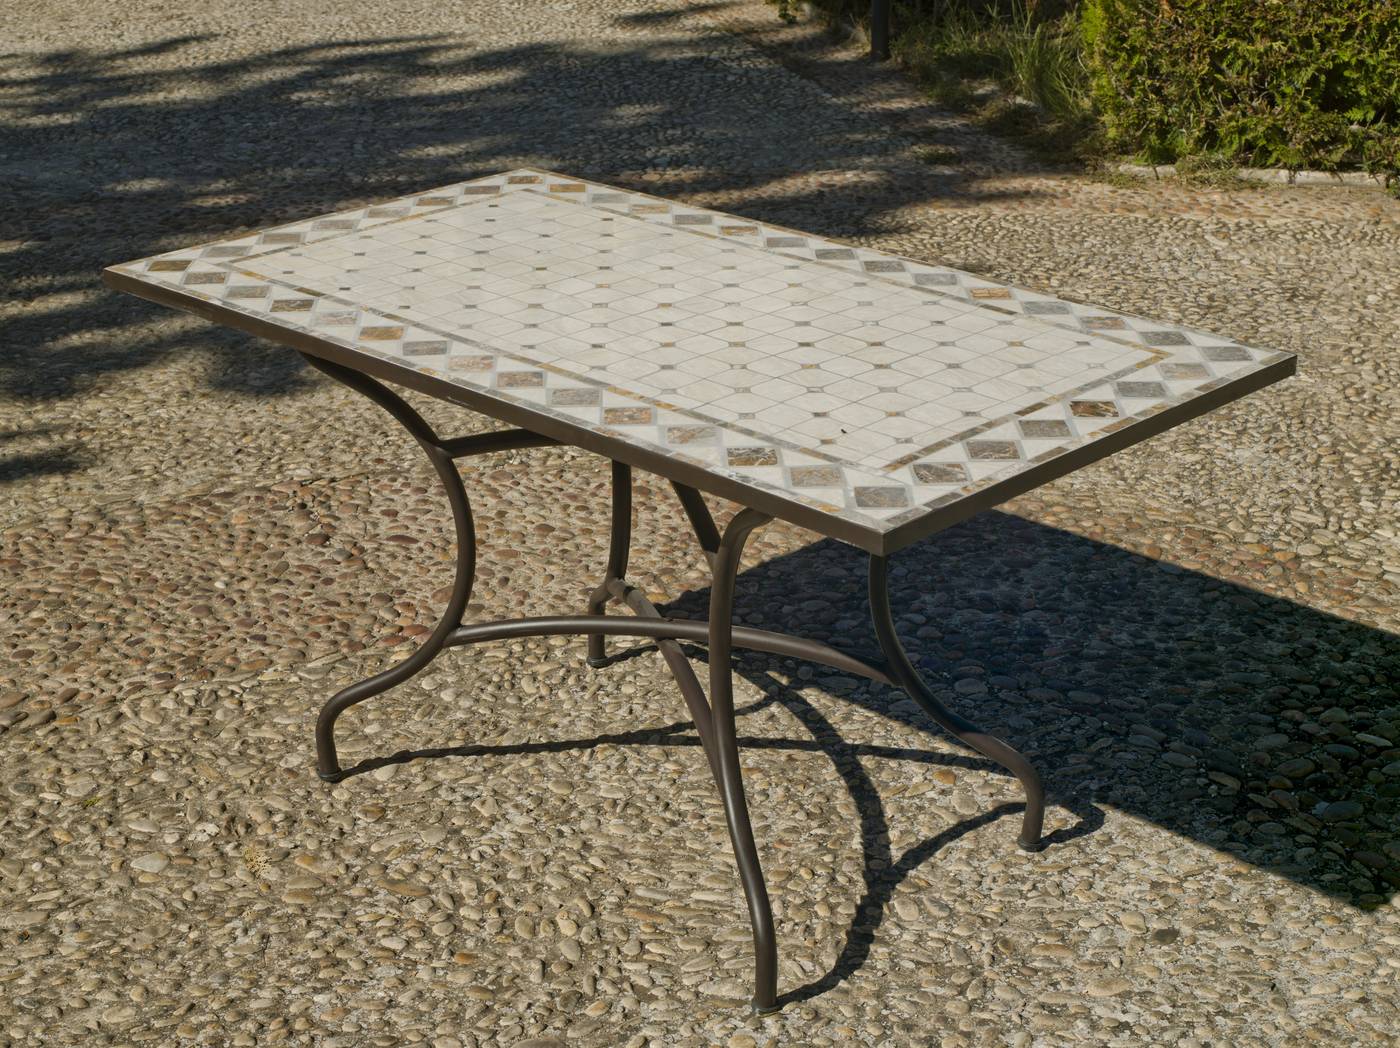 Conjunto Mosaico Nadira-Bergamo 140-4 - Conjunto para terraza o jardín de forja: 1 mesa con panel mosaico + 4 sillones de ratán sintético + 4 cojines.